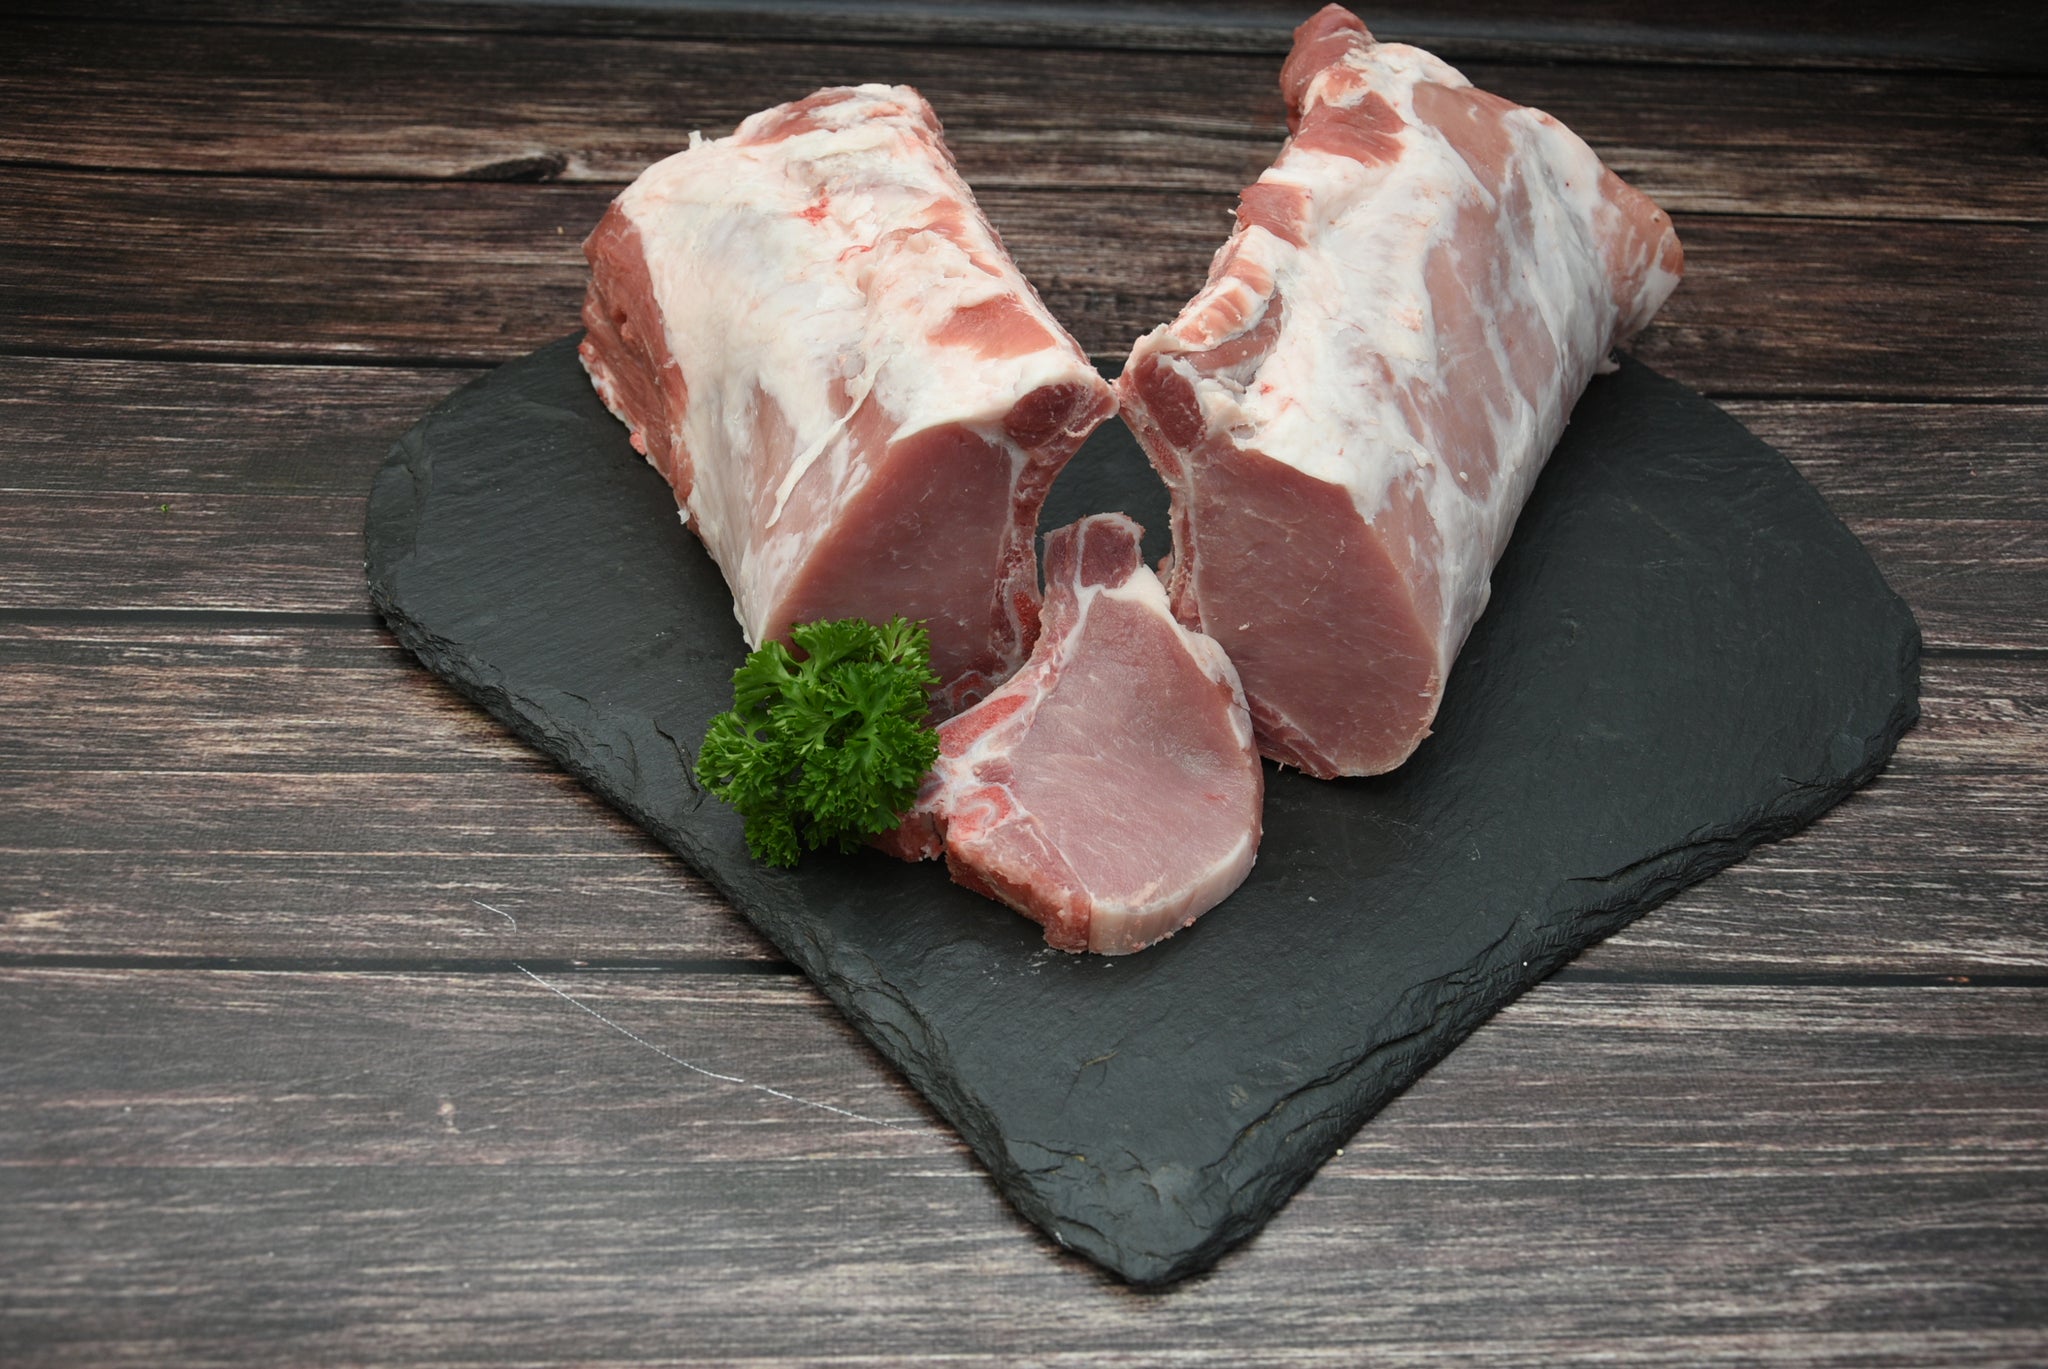 Schweinekotelett ohne Filet, 250g Portion, Preis pro kg20,90€ - Anzahlung